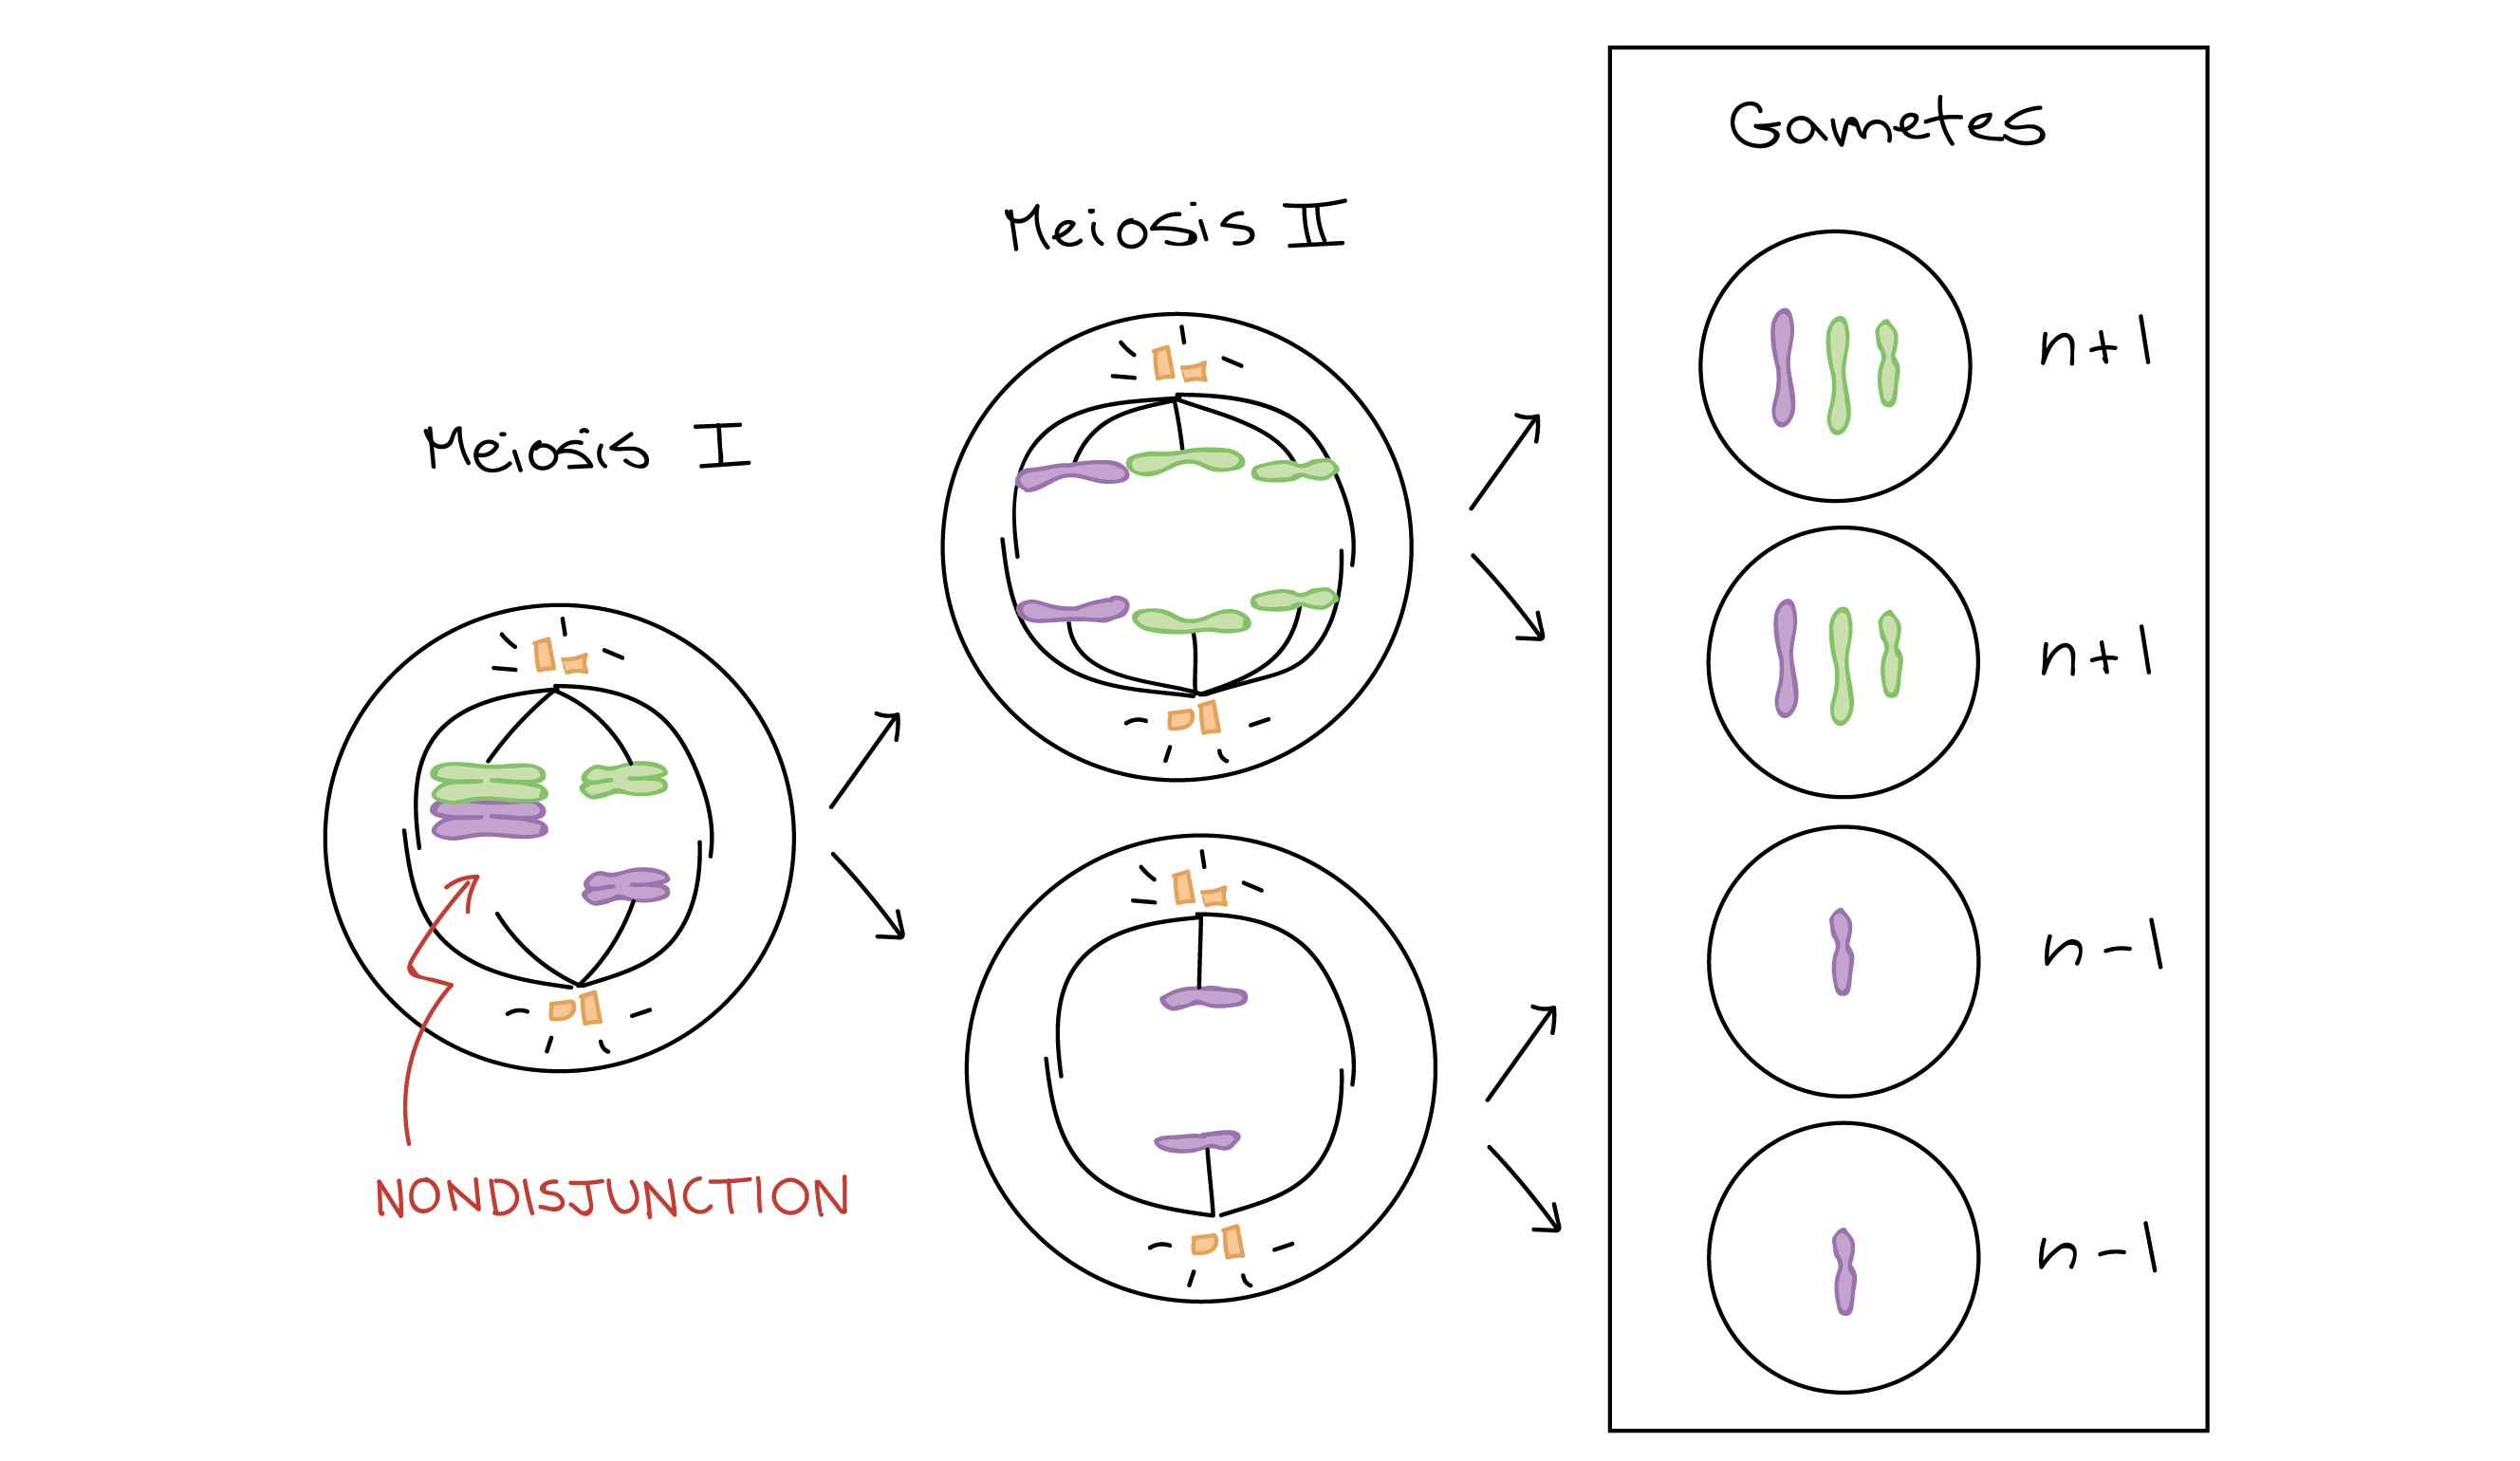 Diagrama que representa la no disyunción en la meioisis I. Un par de cromosomas homólogos no logran separarse durante la meiosis I, dando lugar a dos células anormales como producto de la meiosis I: una célula con un cromosoma extra y otra con un cromosoma faltante. En la meiosis II, las cromátidas de los cromosomas se separan normalmente. Esto lleva a la producción de dos gametos con un cromosoma extra (n+1 gametos) y dos gametos con un cromosoma faltante (n-1 gametos).